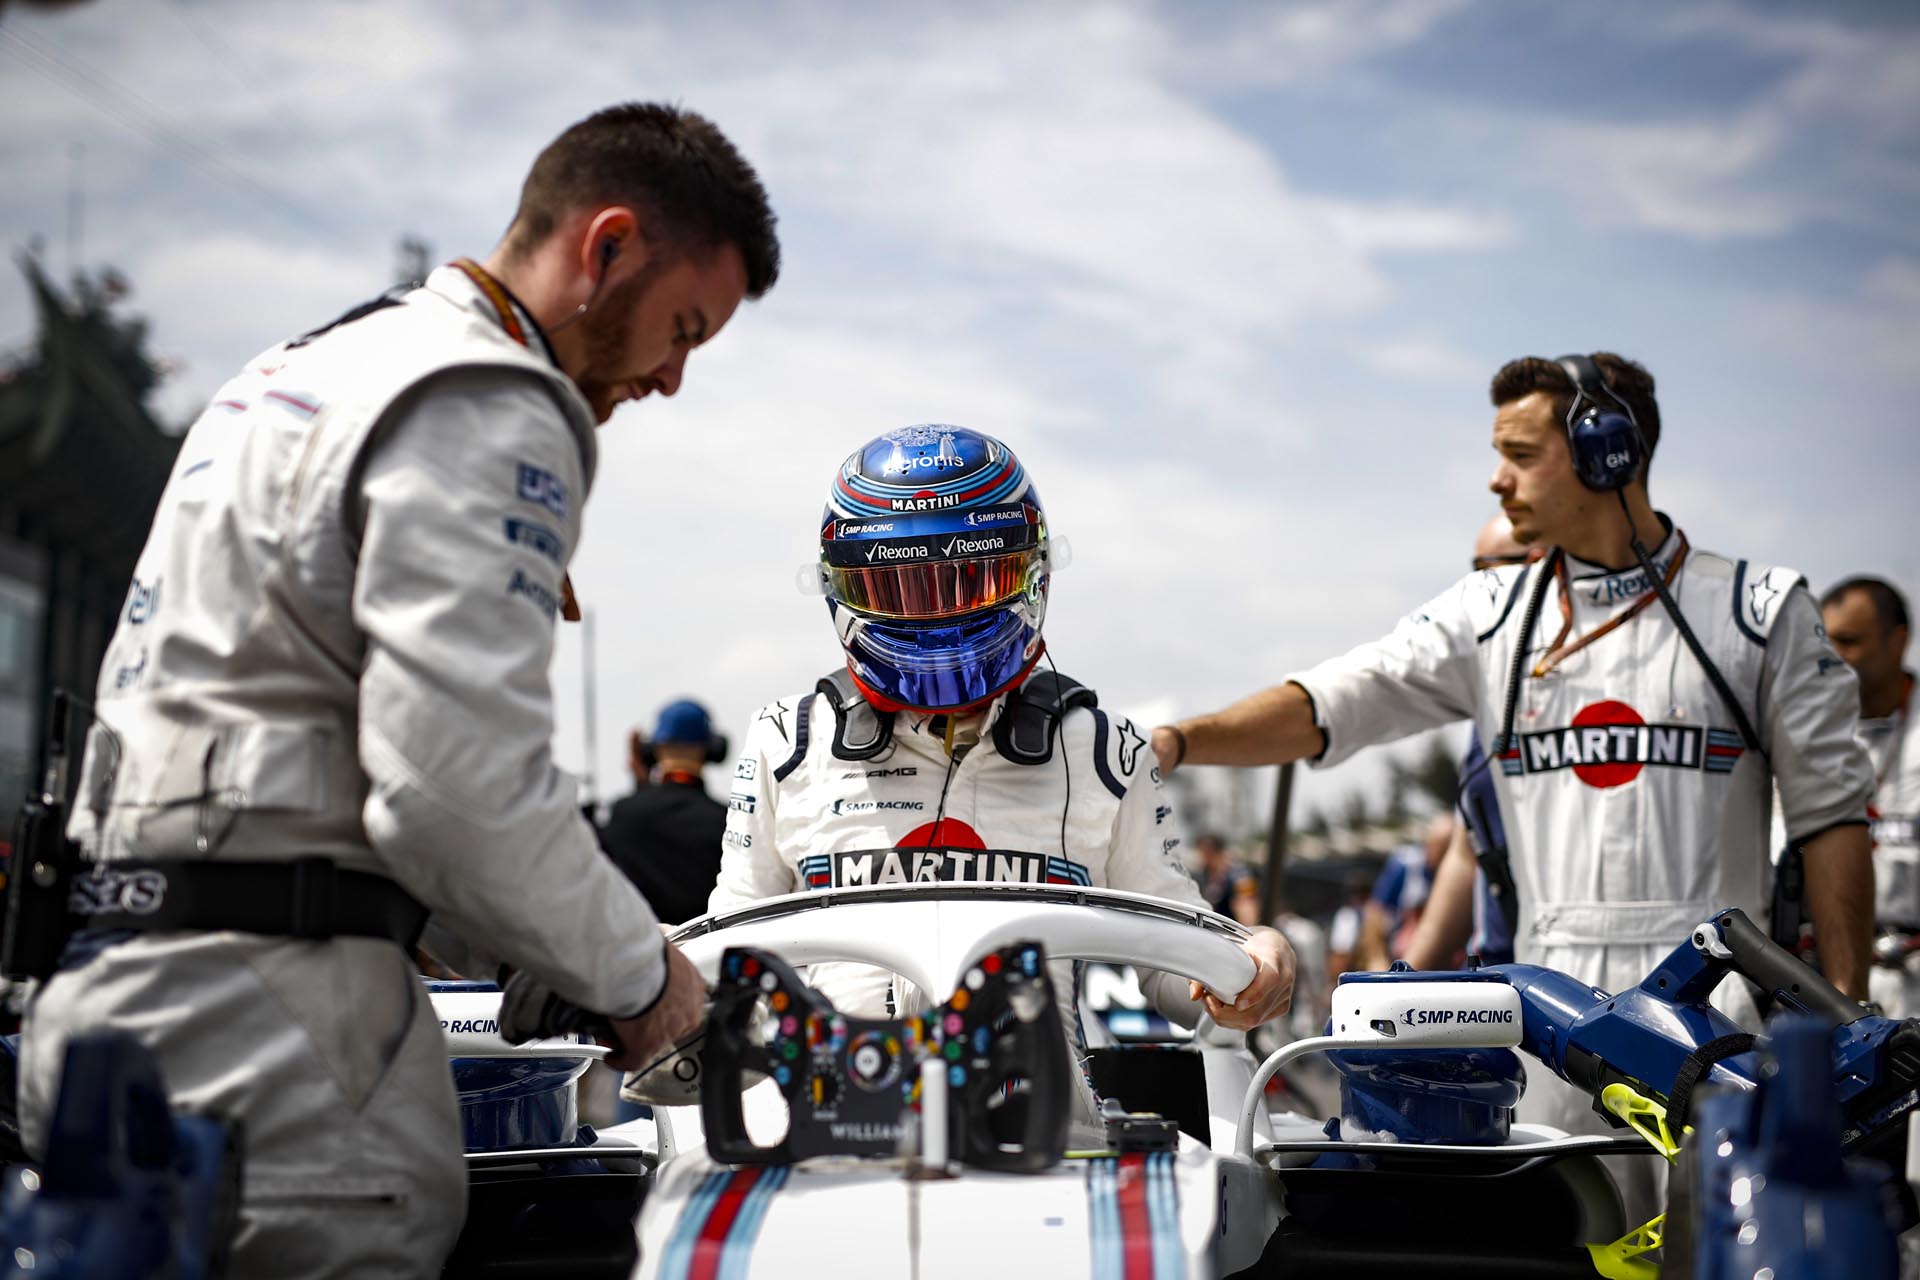 В воскресенье на автодроме имени братьев Родригес в Мехико состоялся Гран-при Мексики, девятнадцатый этап чемпионата мира Формула 1. Пилот программы SMP Racing, гонщик команды Williams Martini Racing Сергей Сироткин занял в гонке 13-е место.